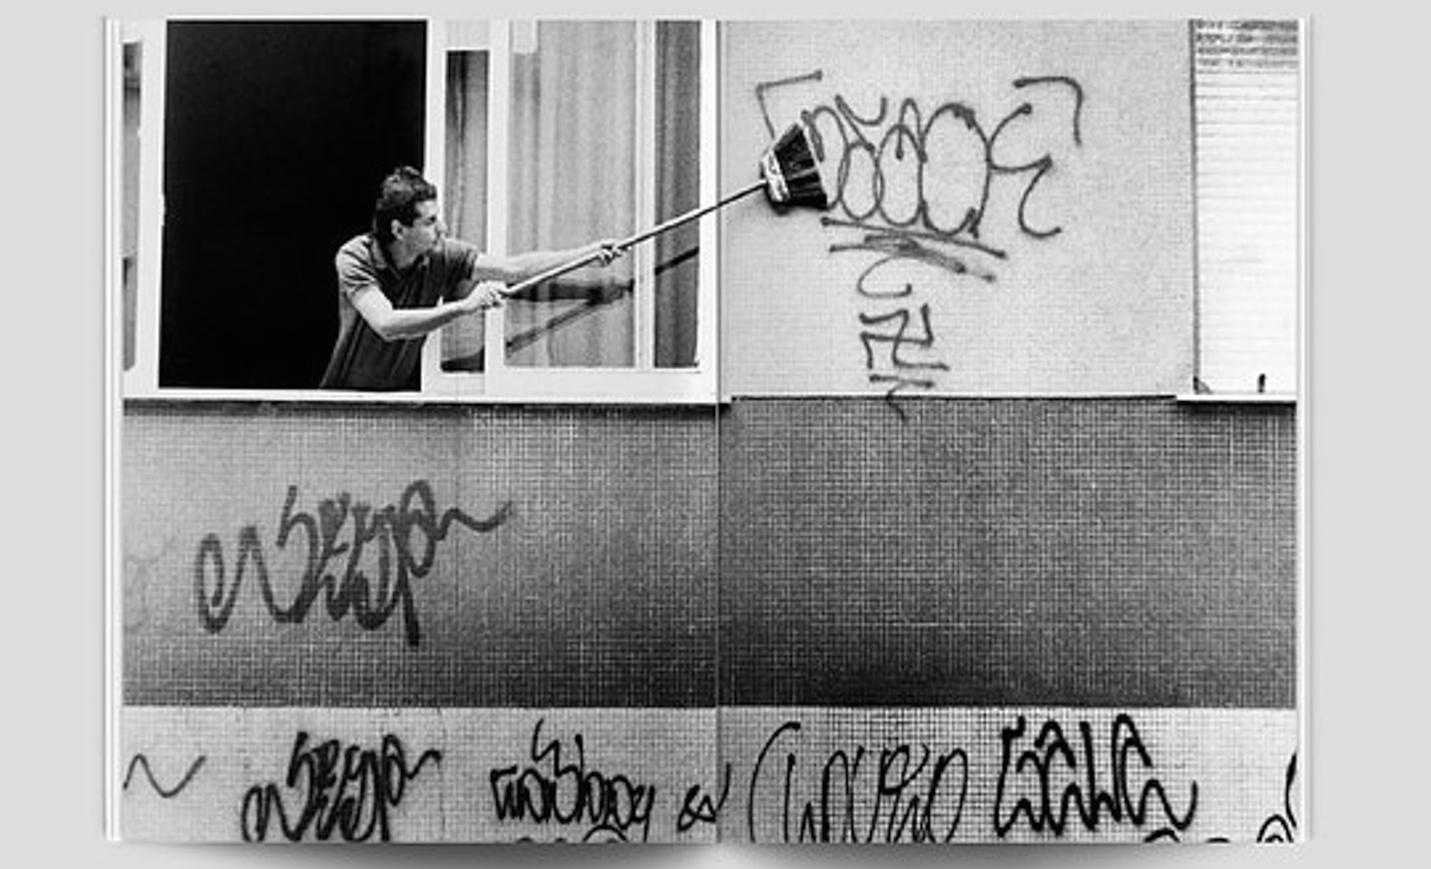 Imagem do livro Xarpi. Foto: Celso Meira, 1986 / Agência O Globo